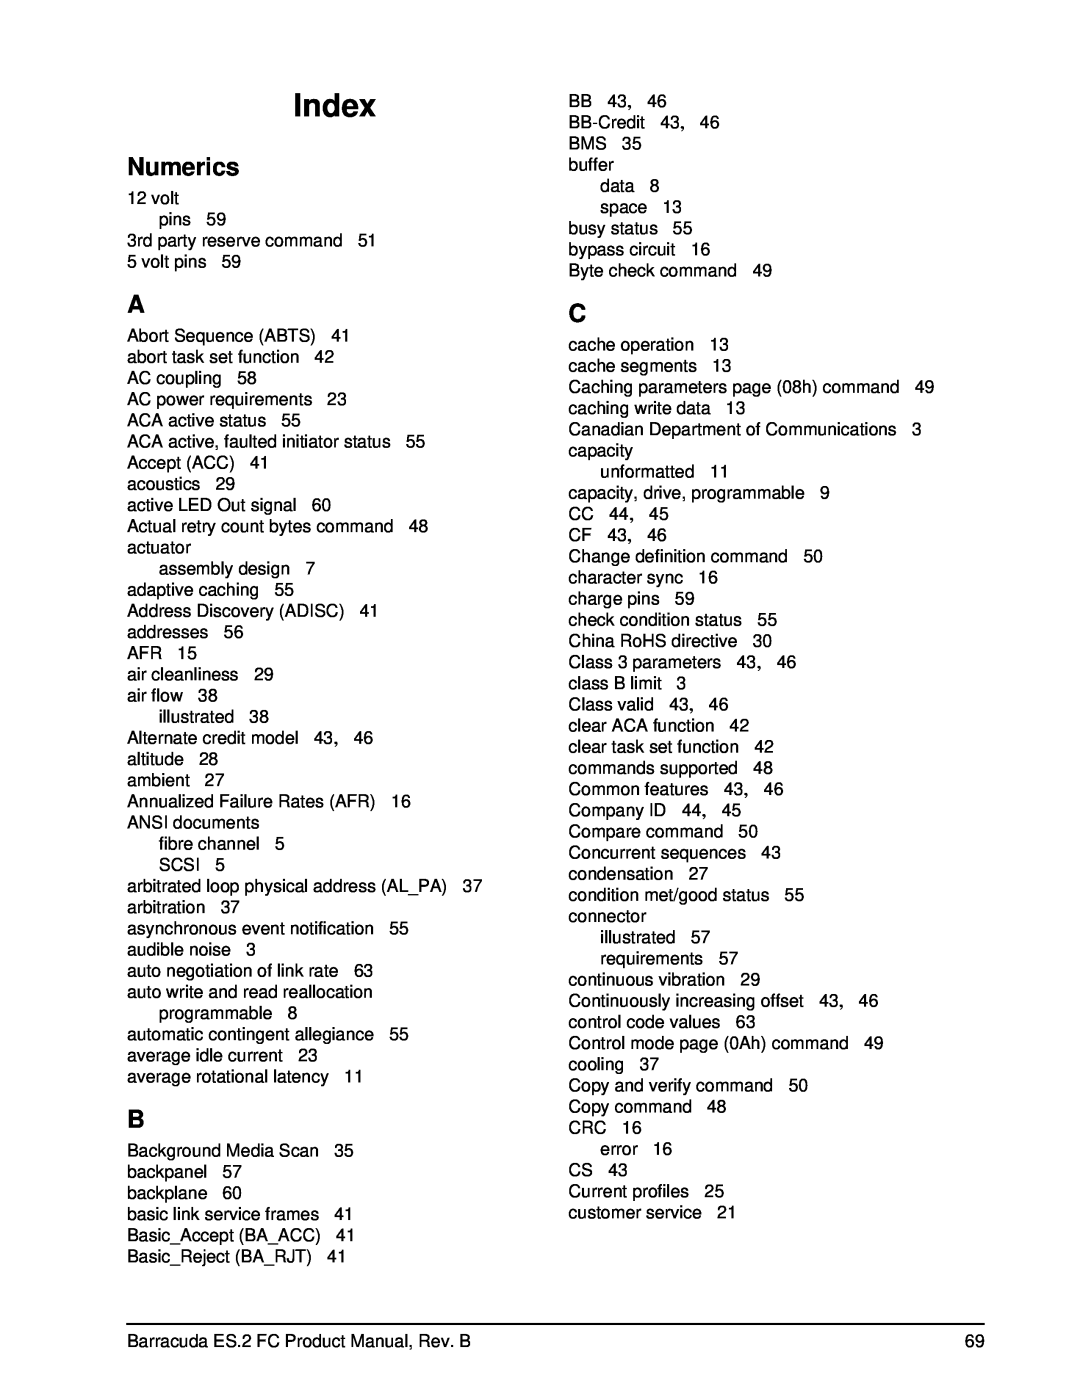 Seagate ST31000640FC, ES.2 FC manual Numerics, Index 